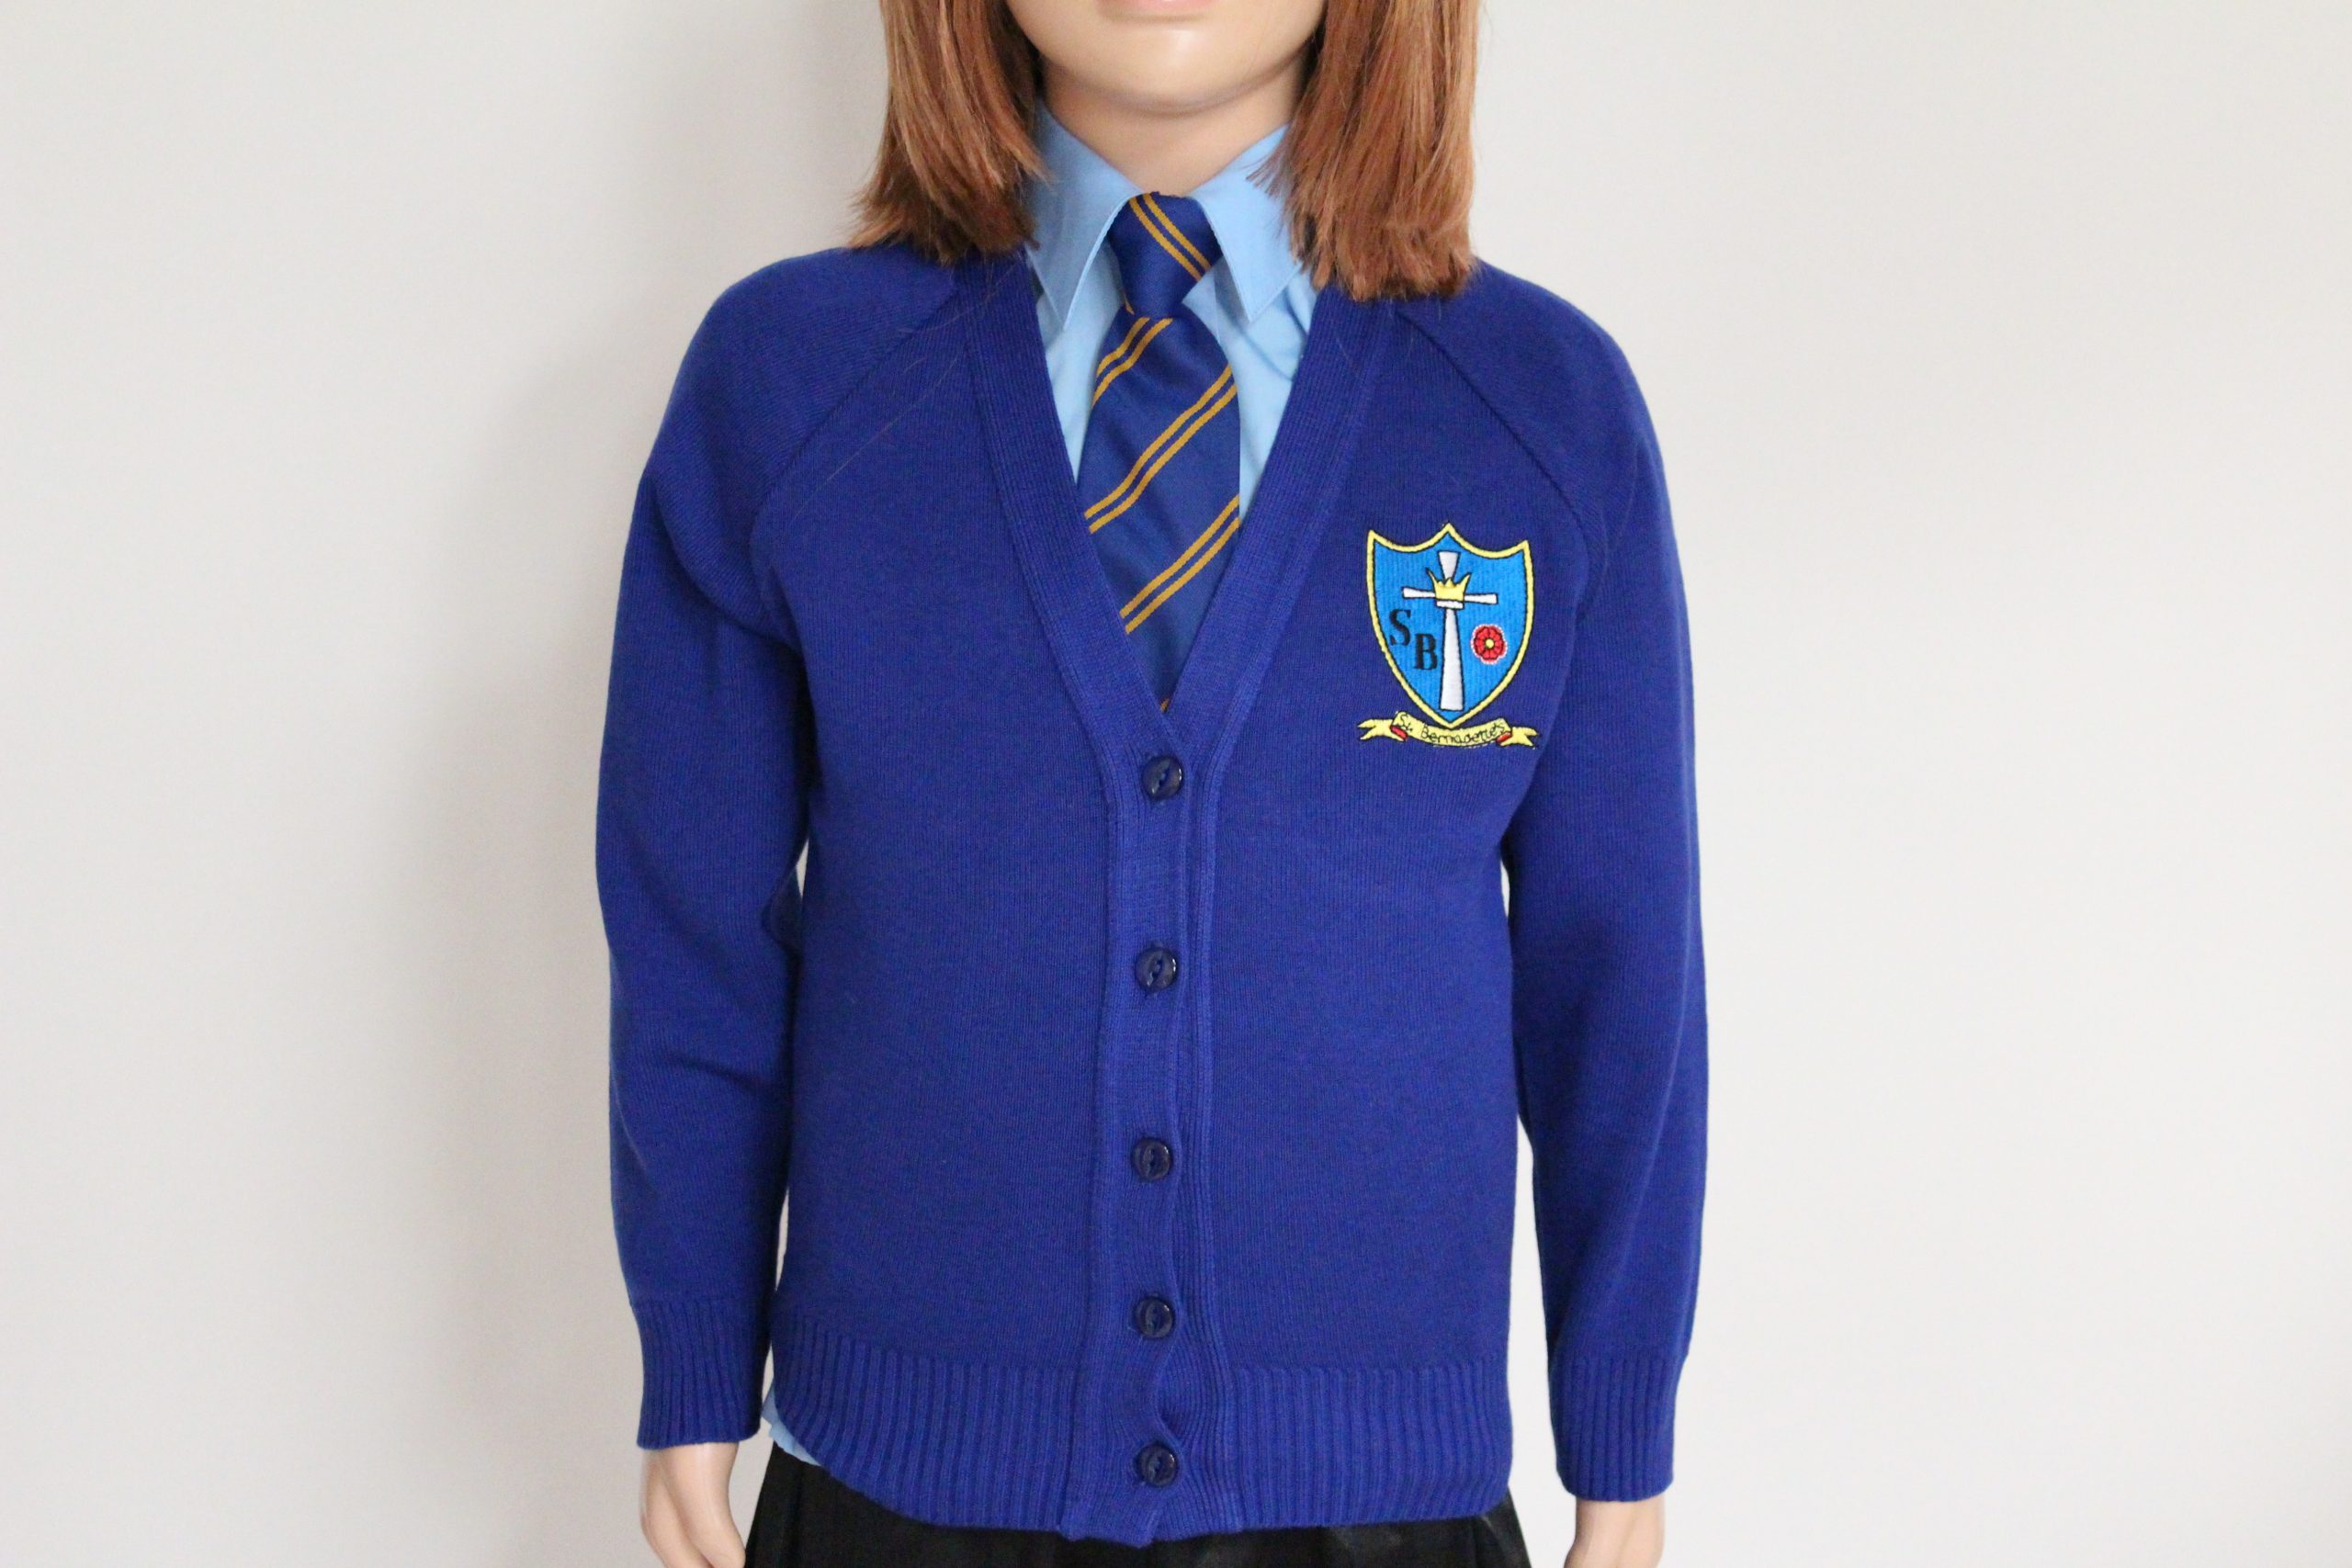 School Uniform  St Bernadette's